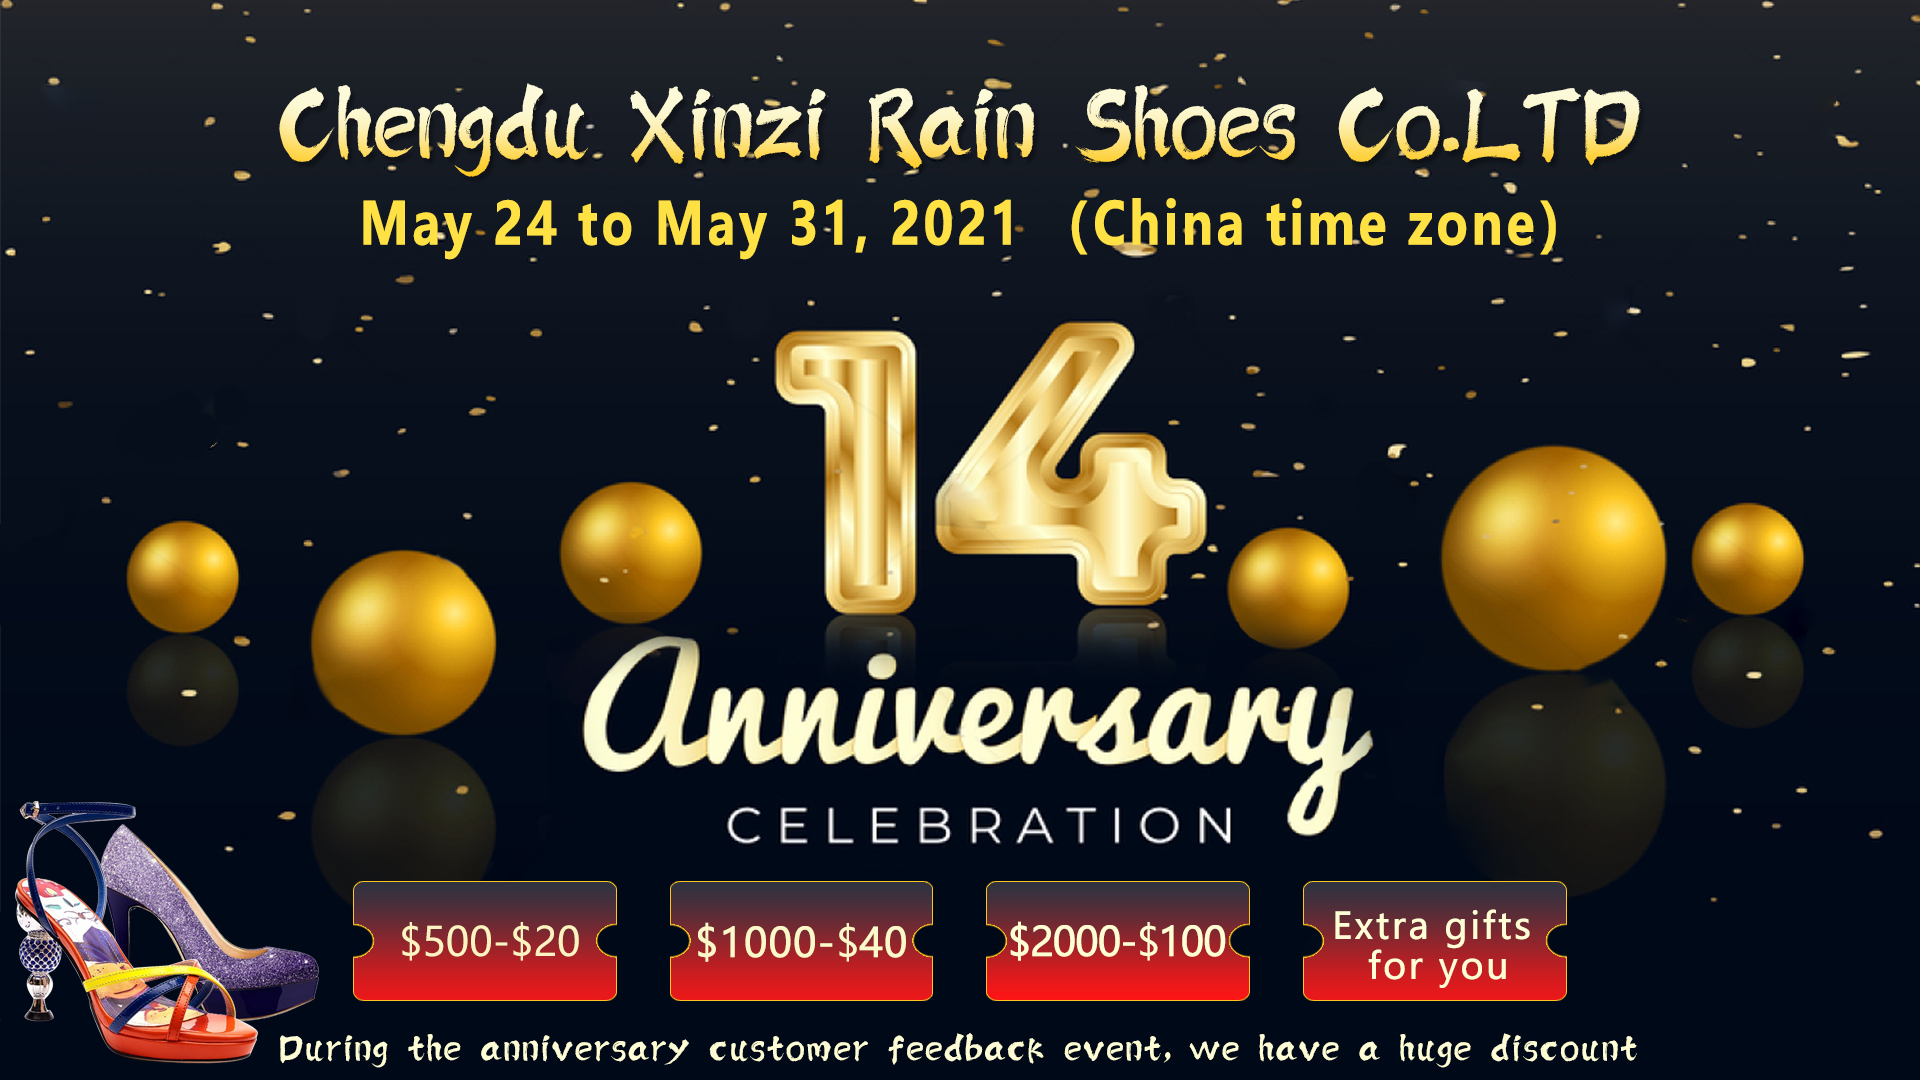 Xinzi Rain Shoes Co., Ltd., 14. urteurrena